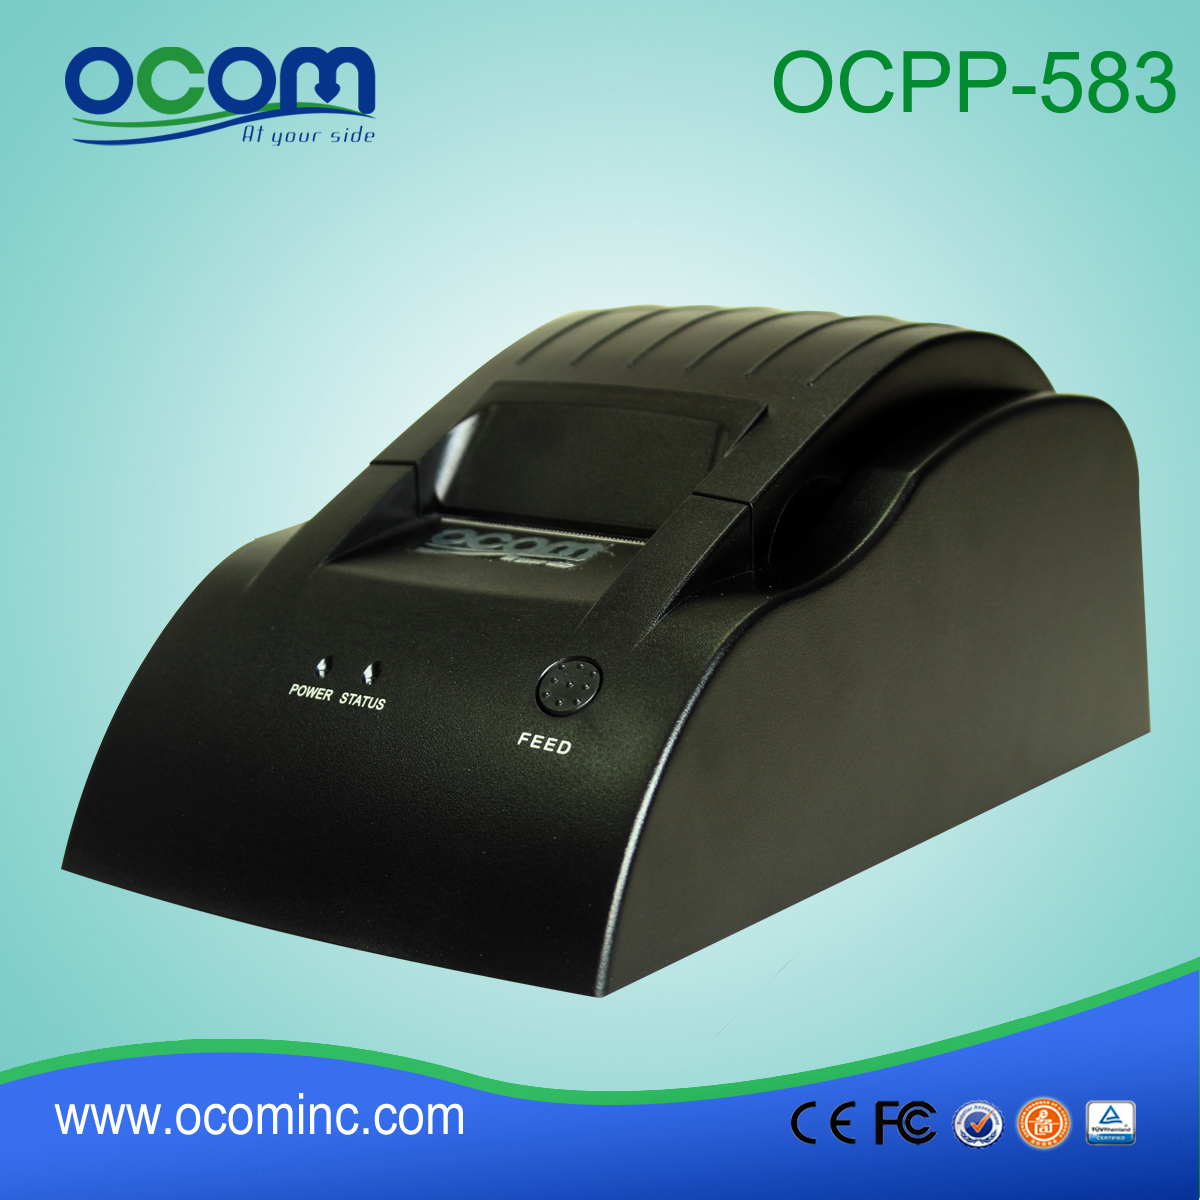 OCPP-583: 2015 سعر طابعة حرارية المباشر، وطابعة حرارية نقاط البيع